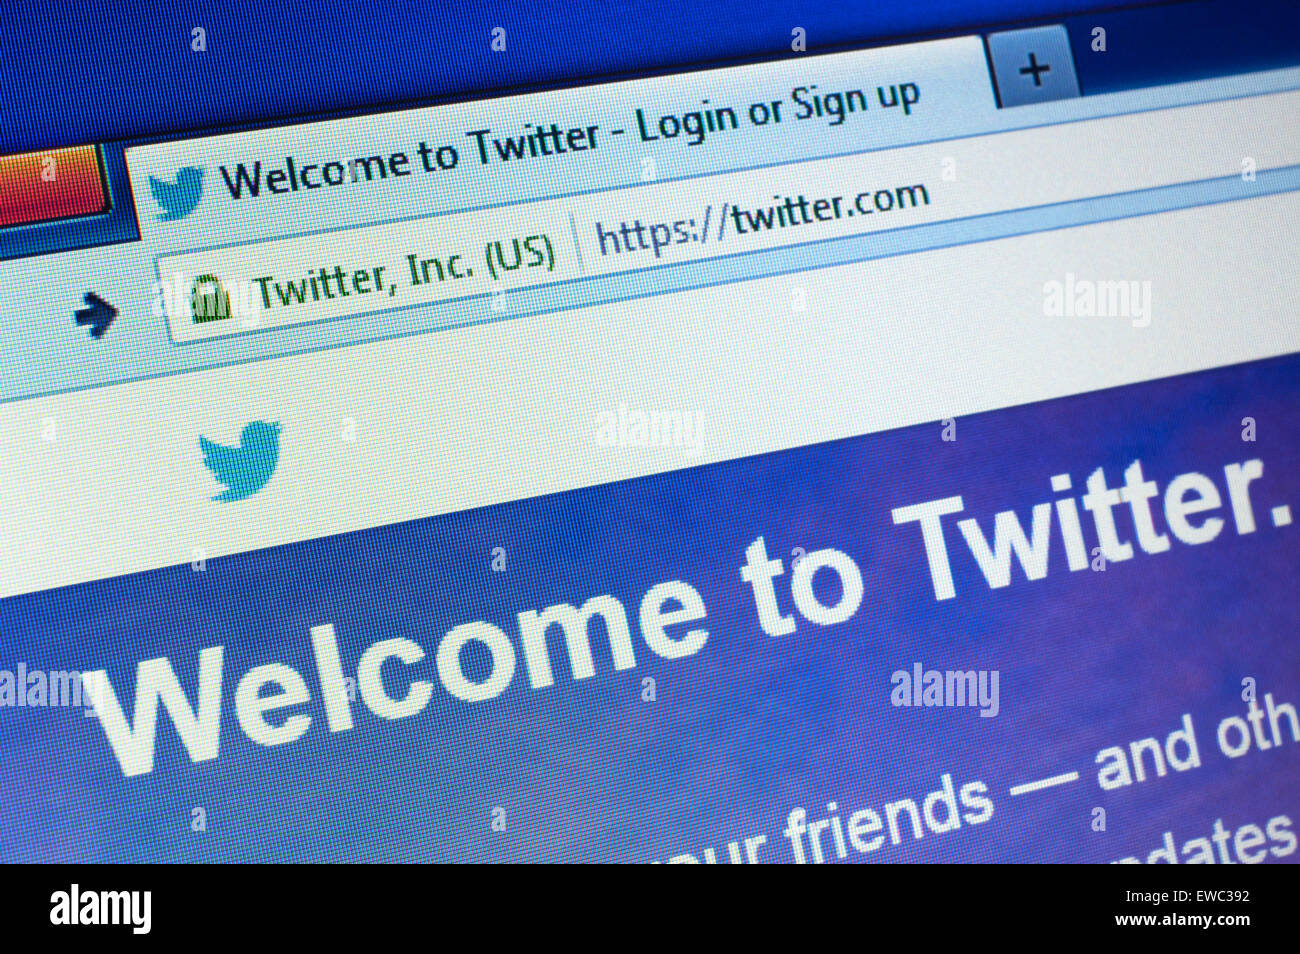 GDANSK, POLOGNE - Le 25 avril 2015. Twitter.com homepage sur l'écran. Twitter est un réseau social de microblogging et se Banque D'Images